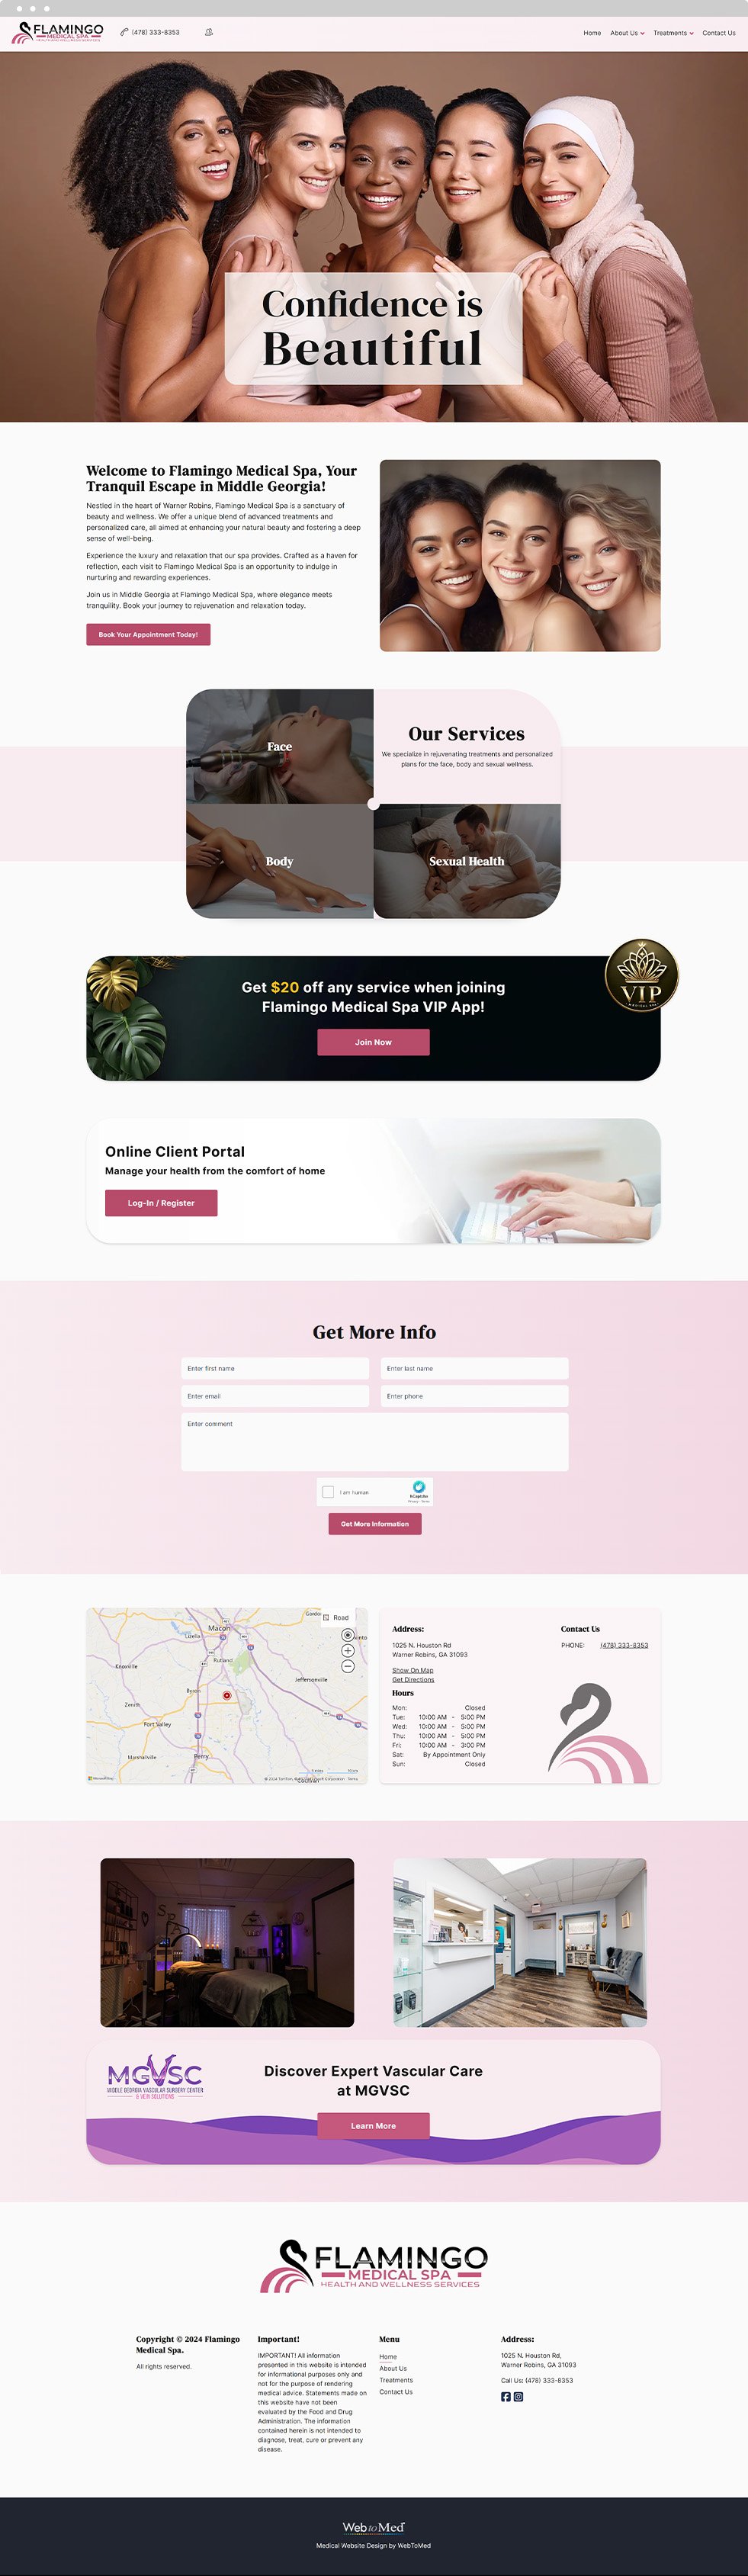 Med Spa Website Design - Flamingo Medical Spa - Homepage